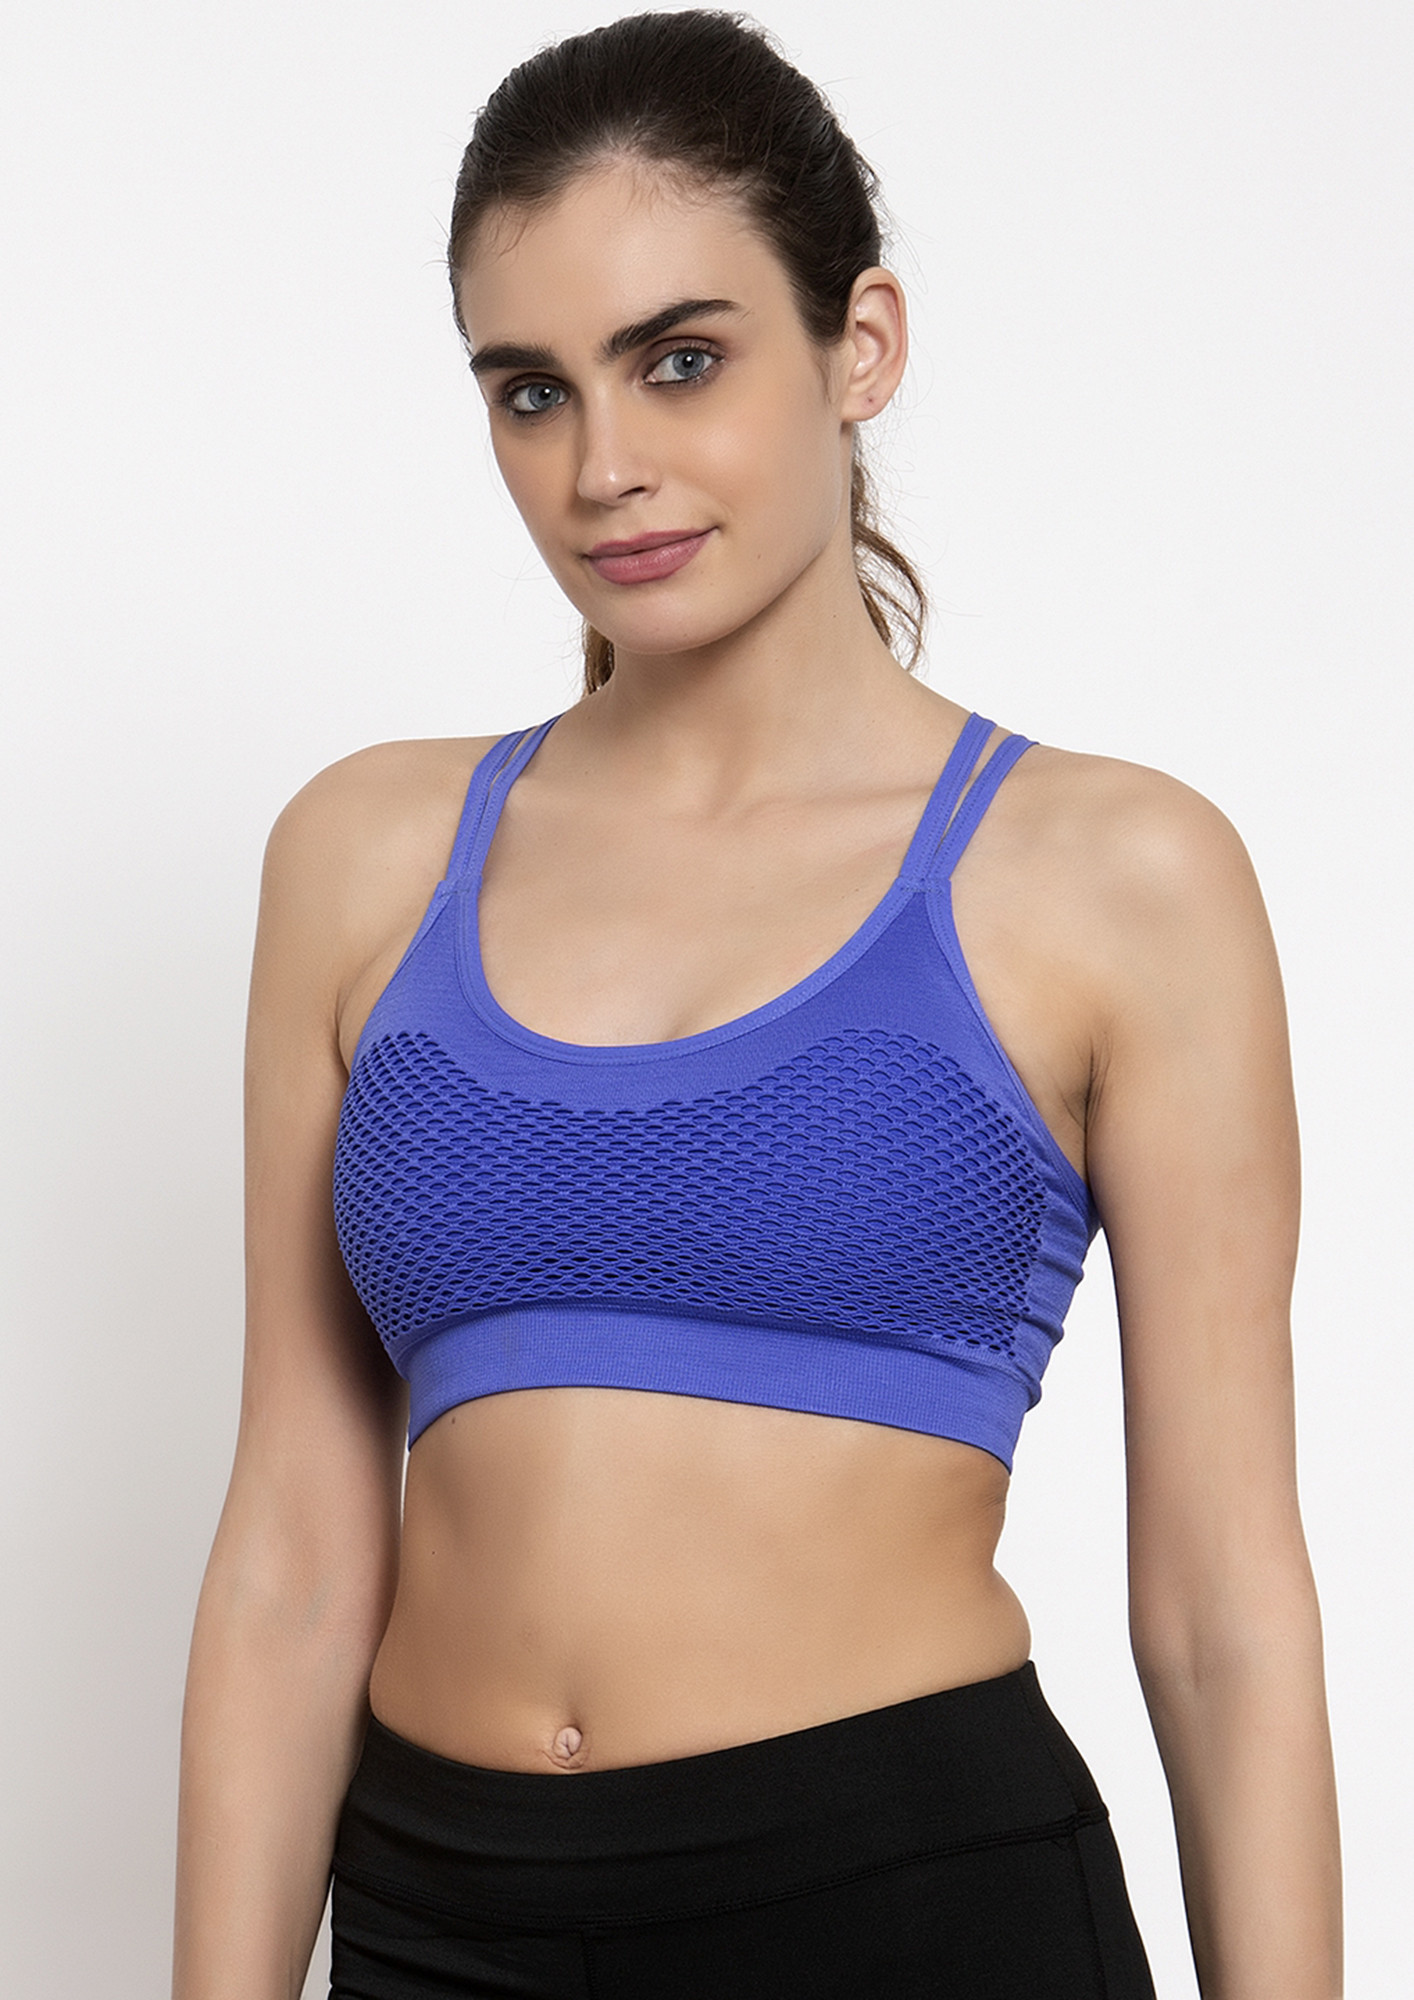 Buy Makclan Sexy in Sweat Navy Blue Sports Bra for Women Online in